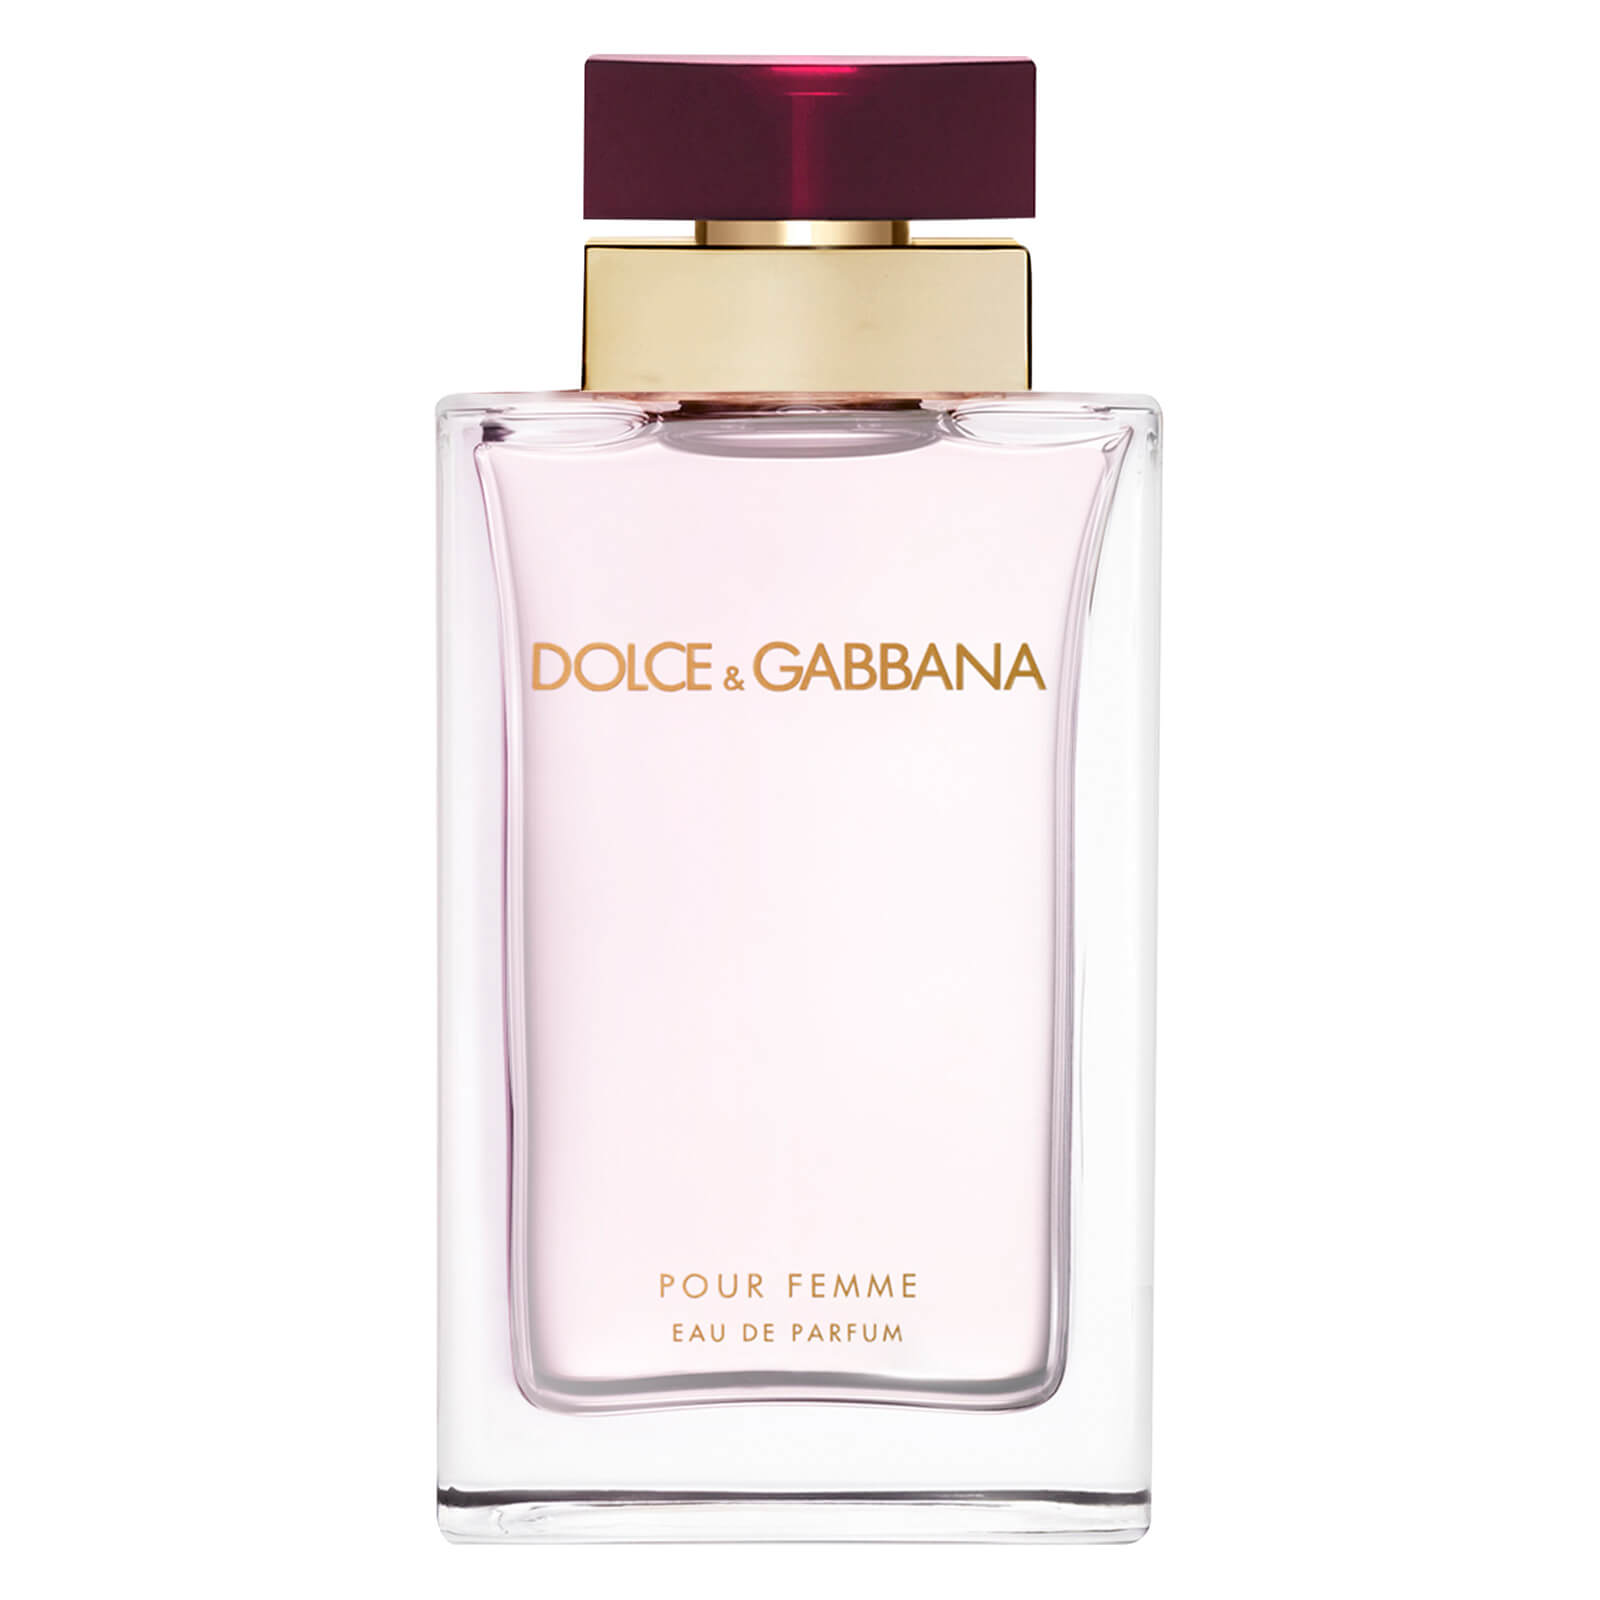 Dolce&Gabbana Pour Femme Eau de Parfum 100ml